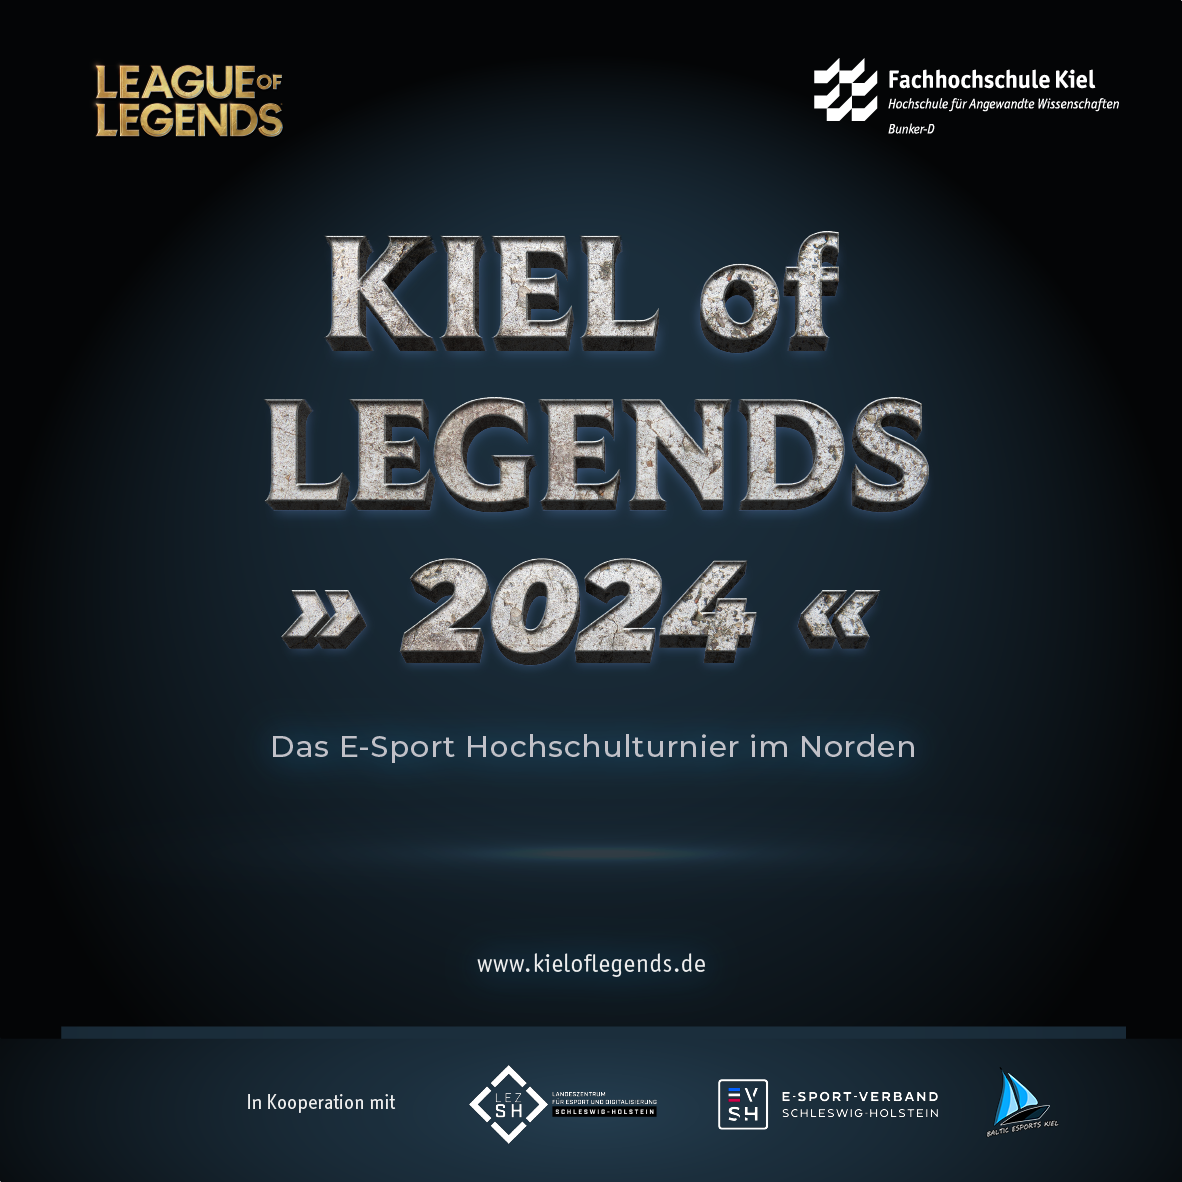 Kiel of Legends - Das E-Sport Hochschulturnier im Norden mit Finalspielen vom 02. bis 04. Mai 2024 im Bunker-D der Fachhochschule Kiel.